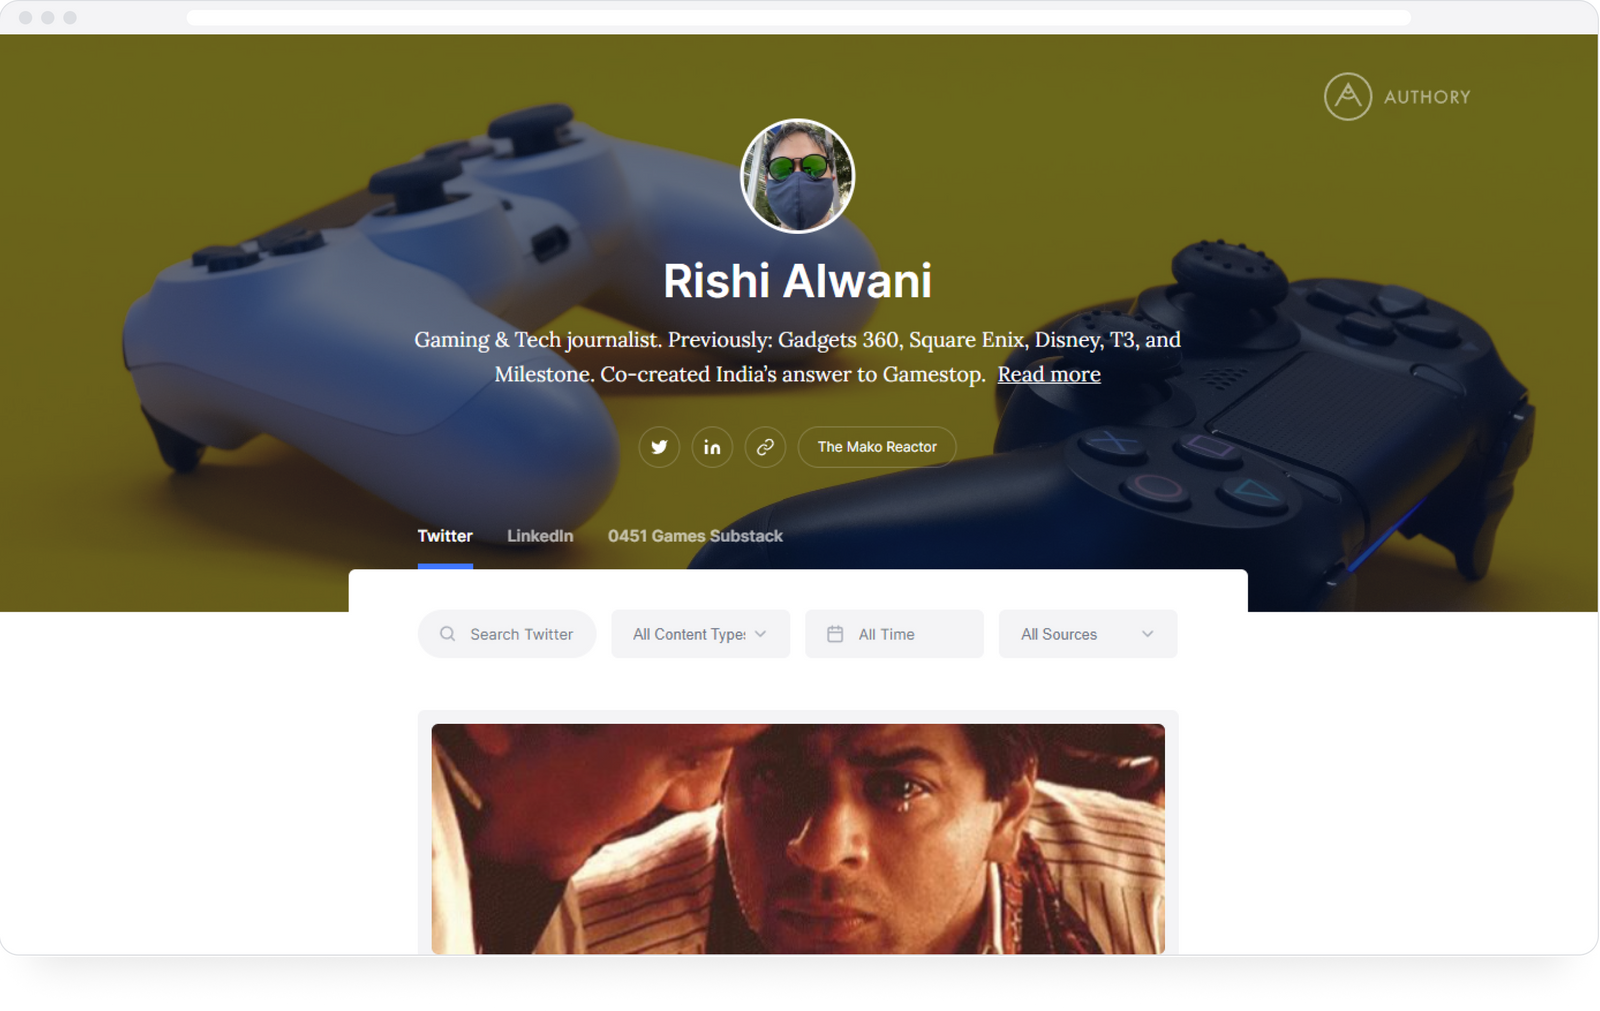 Rishi Alwani's Twitter portfolio on Authory